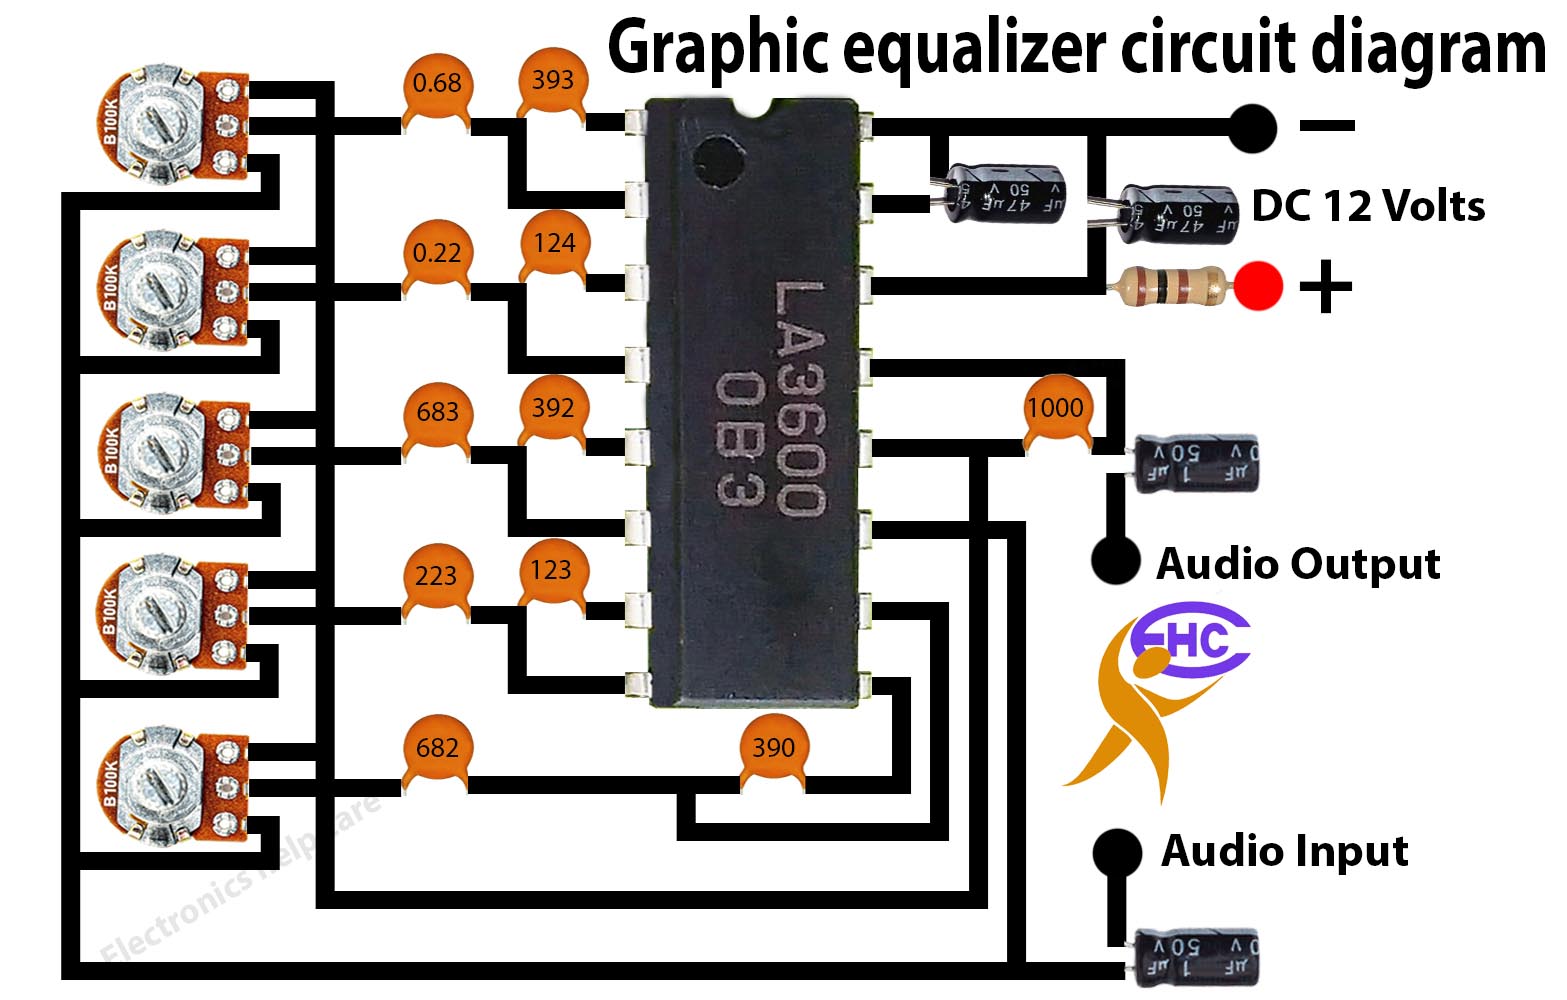 Graphic equalizer circuit diagram